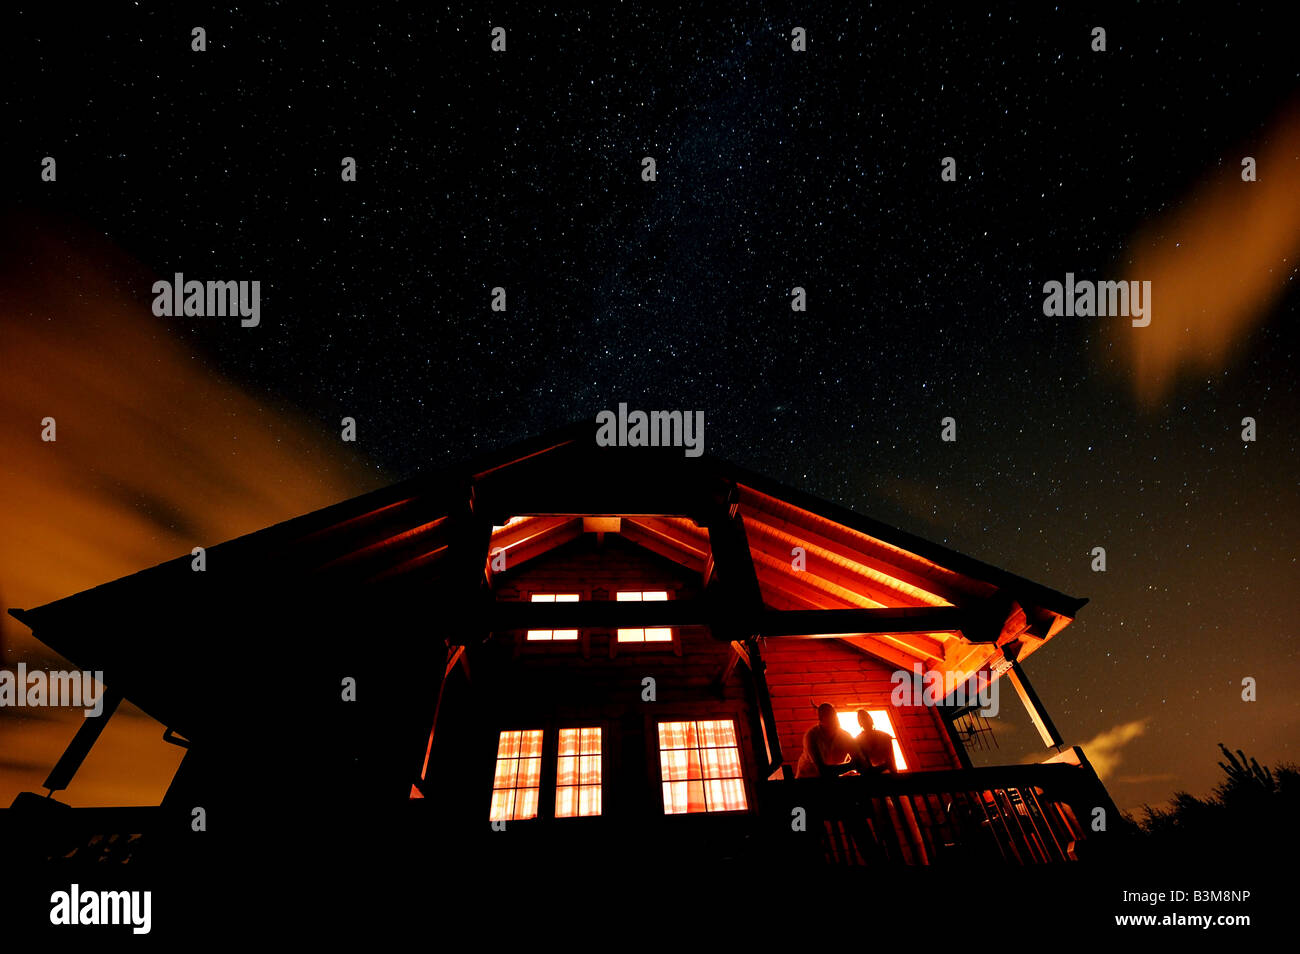 La Voie lactée s'étend au-dessus d'une cabane en bois comme deux résidents admirer l'impressionnant ciel nocturne au-dessus de Inverness, Écosse Banque D'Images